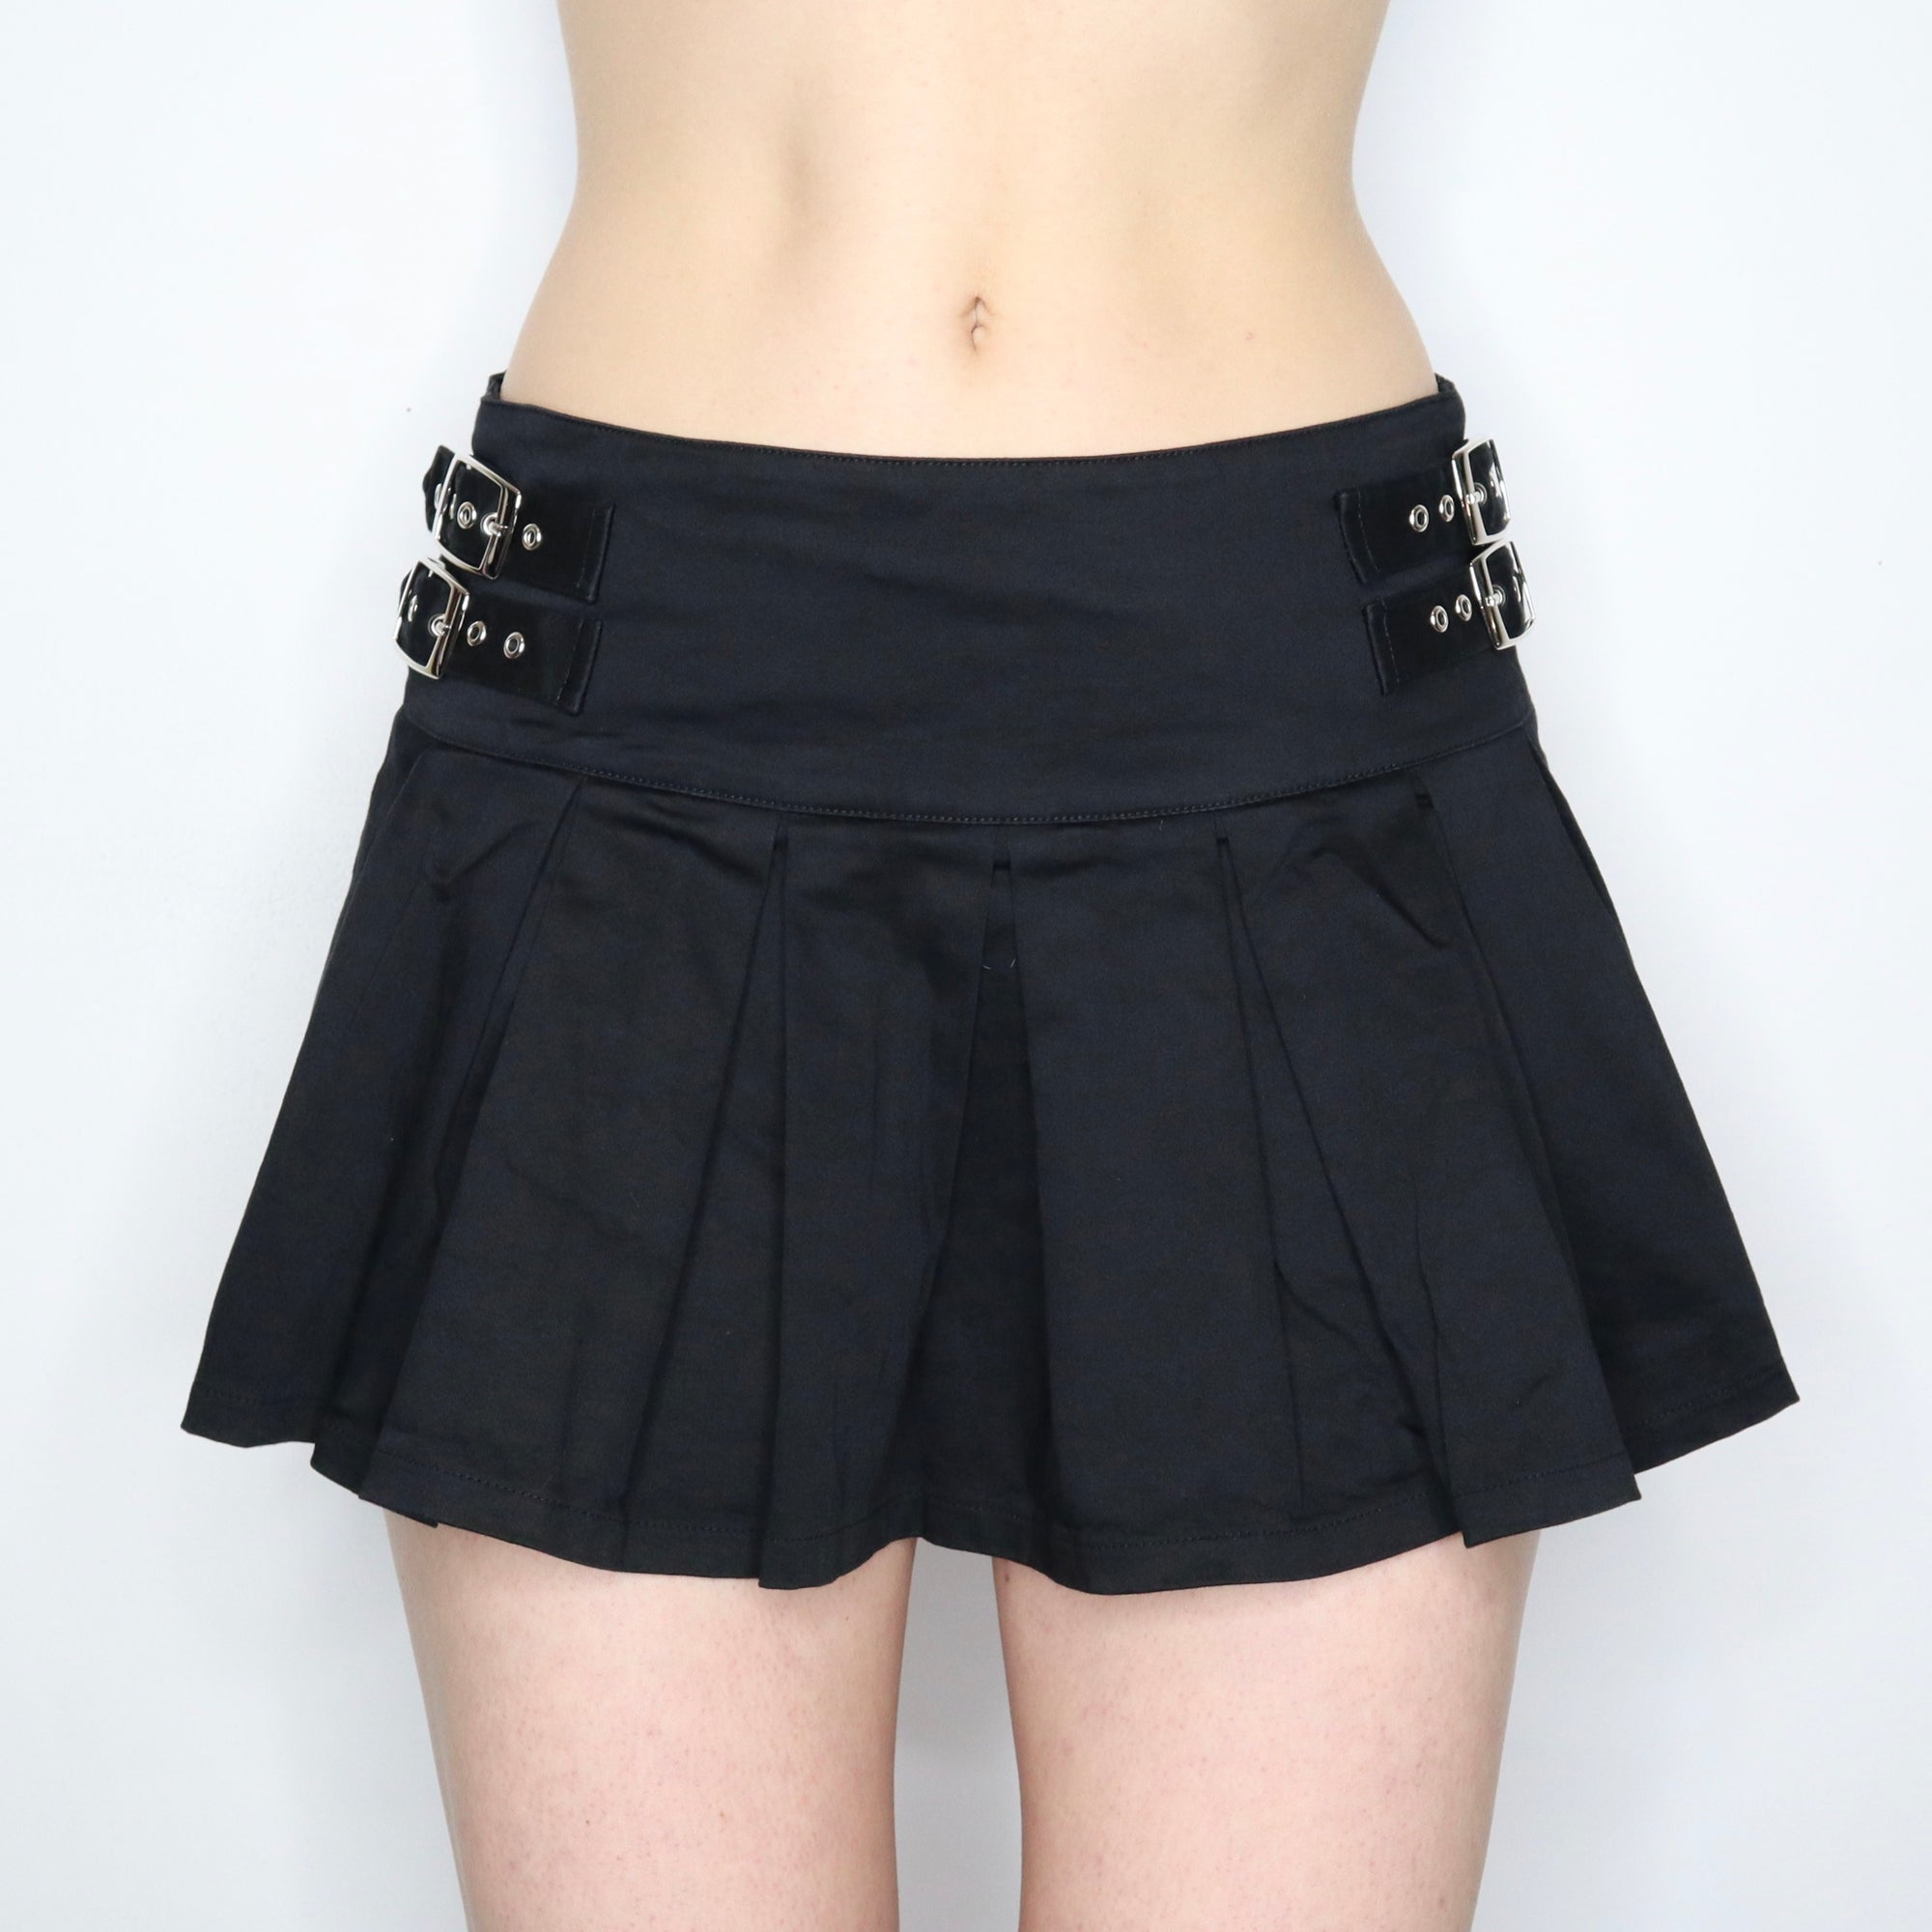 Mall Goth Mini Skirt 